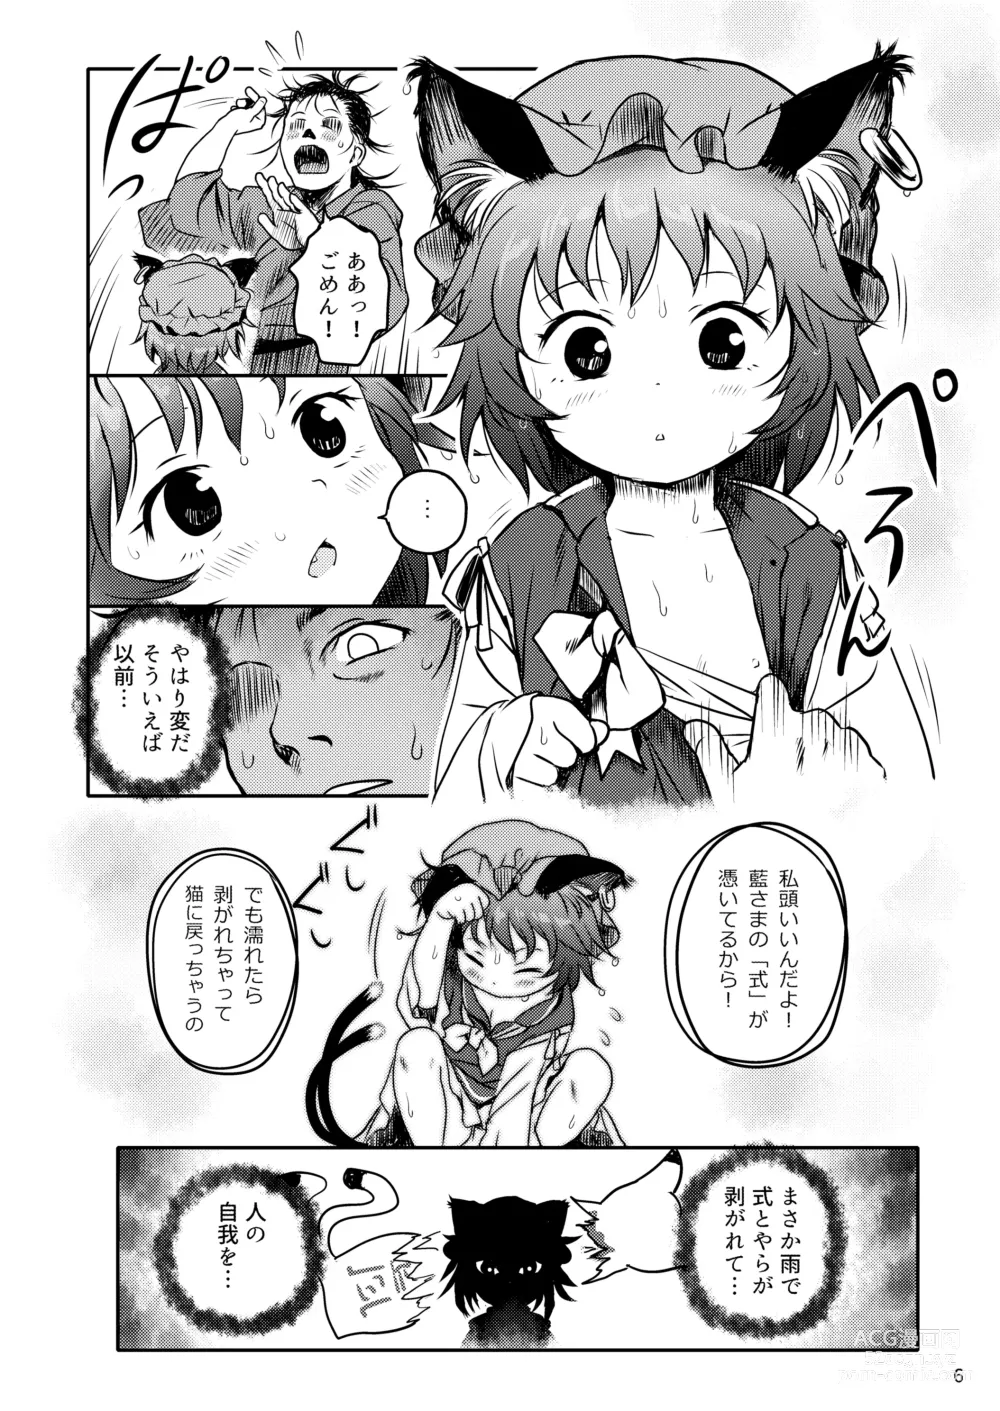 Page 6 of doujinshi Maseneko! Chen-chan!